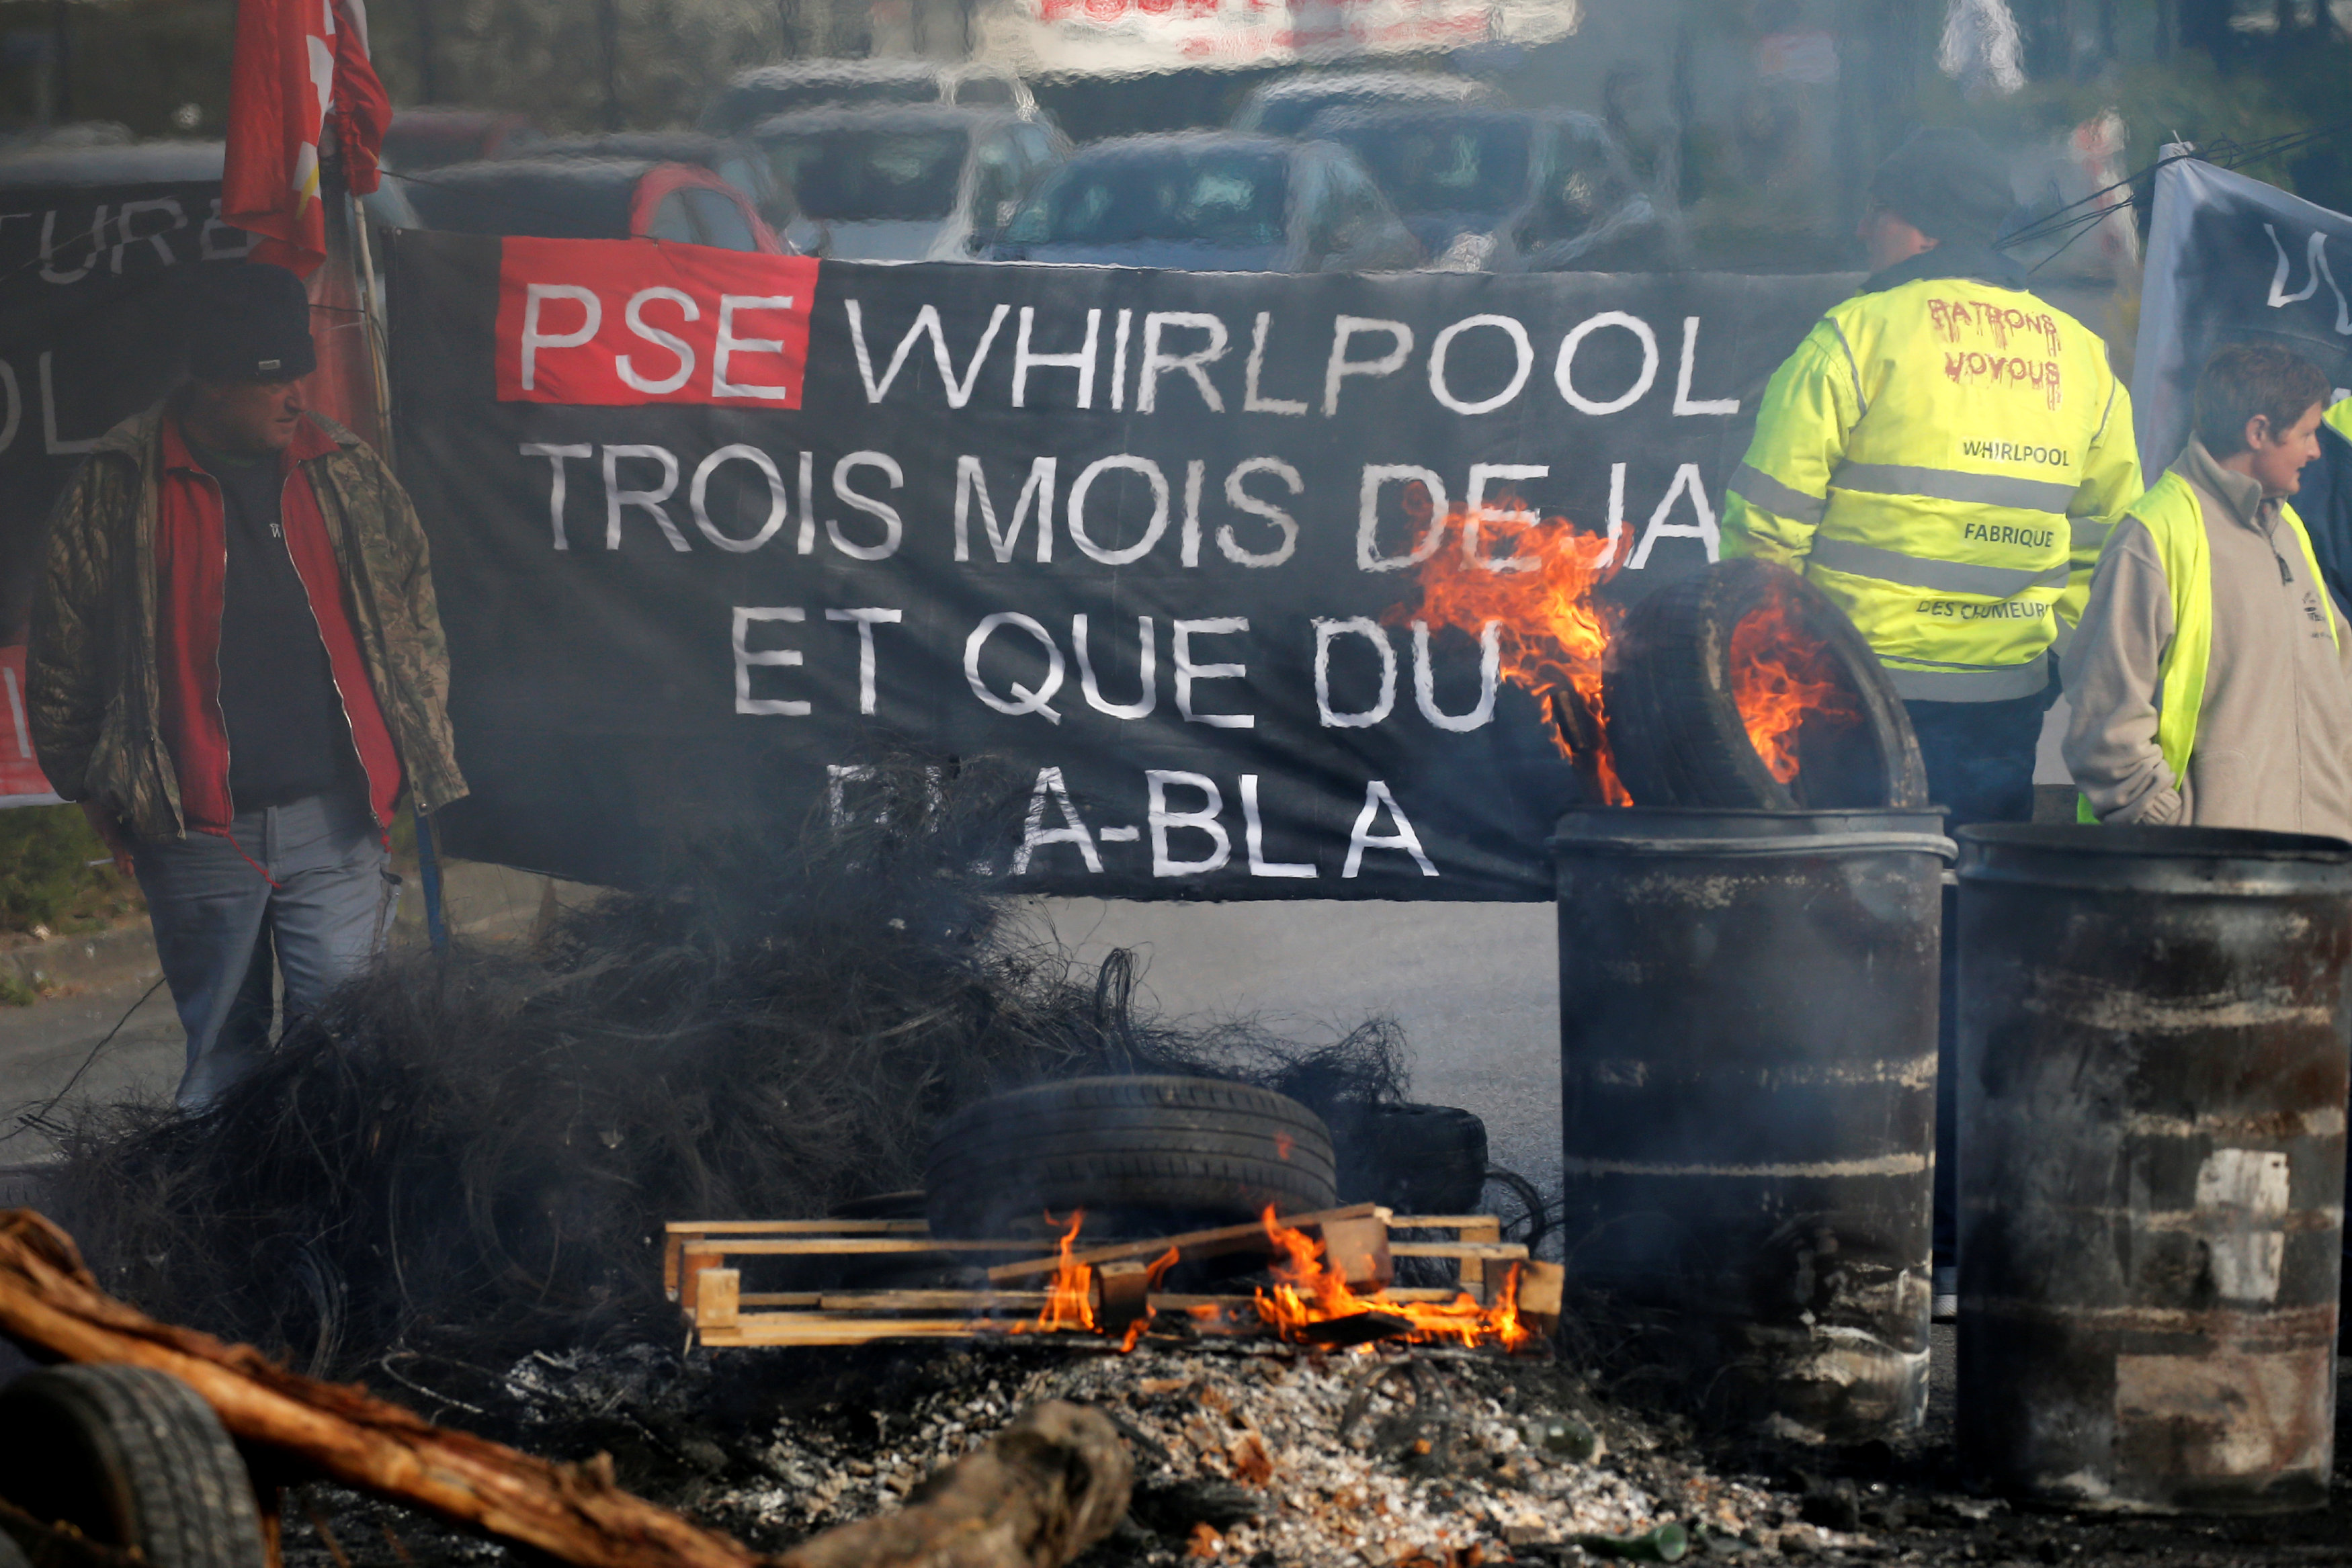 حرق اطارات سيارات خارج مصنع بمدينة فرنسية